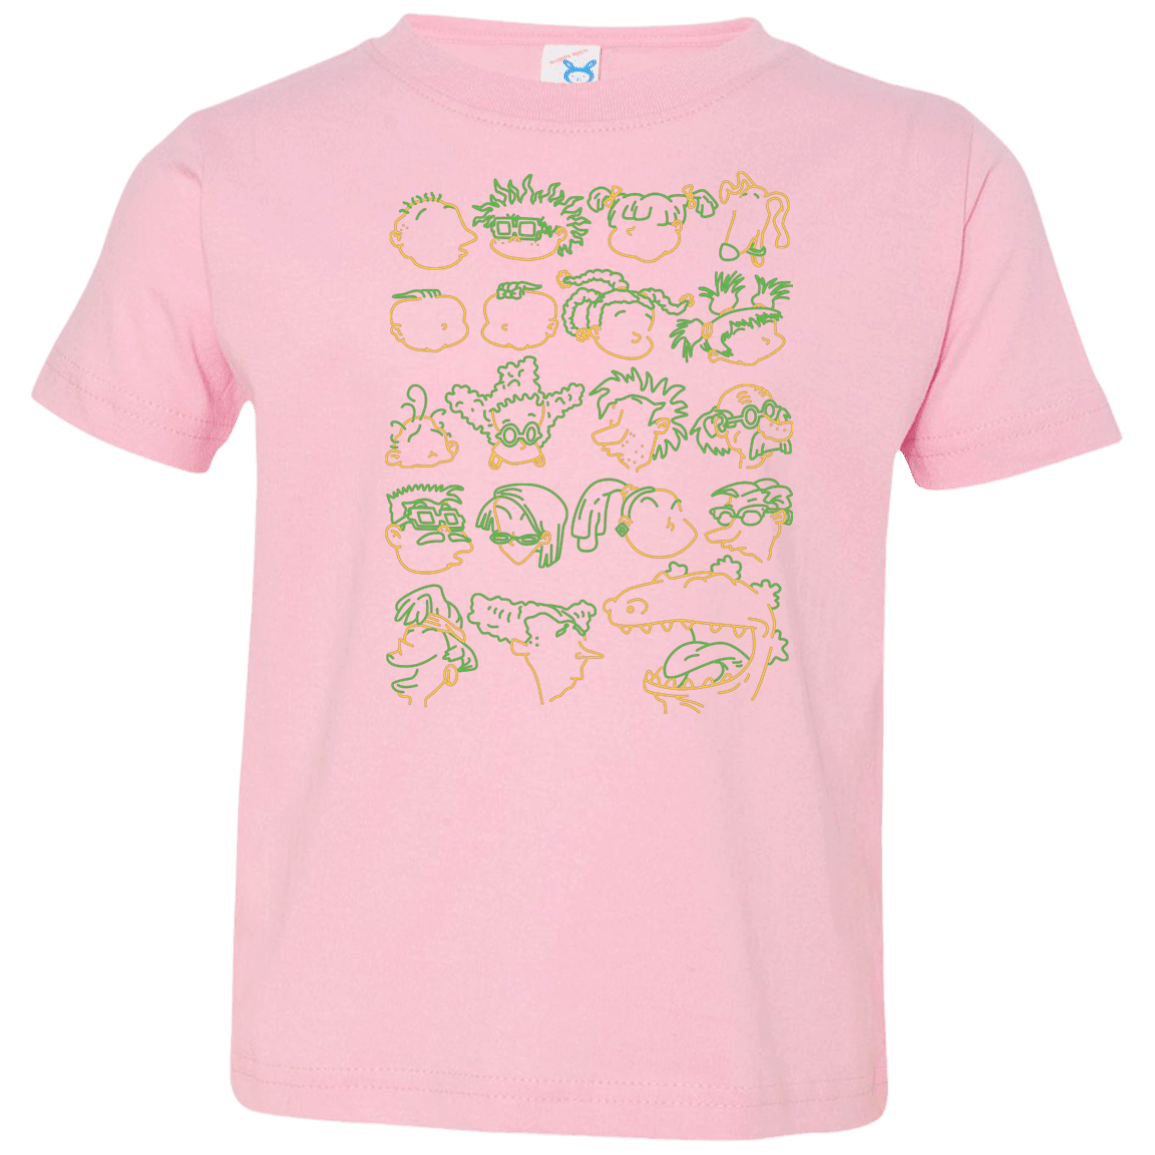 T-Shirts Pink / 2T RUGRAT HEADS Toddler Premium T-Shirt